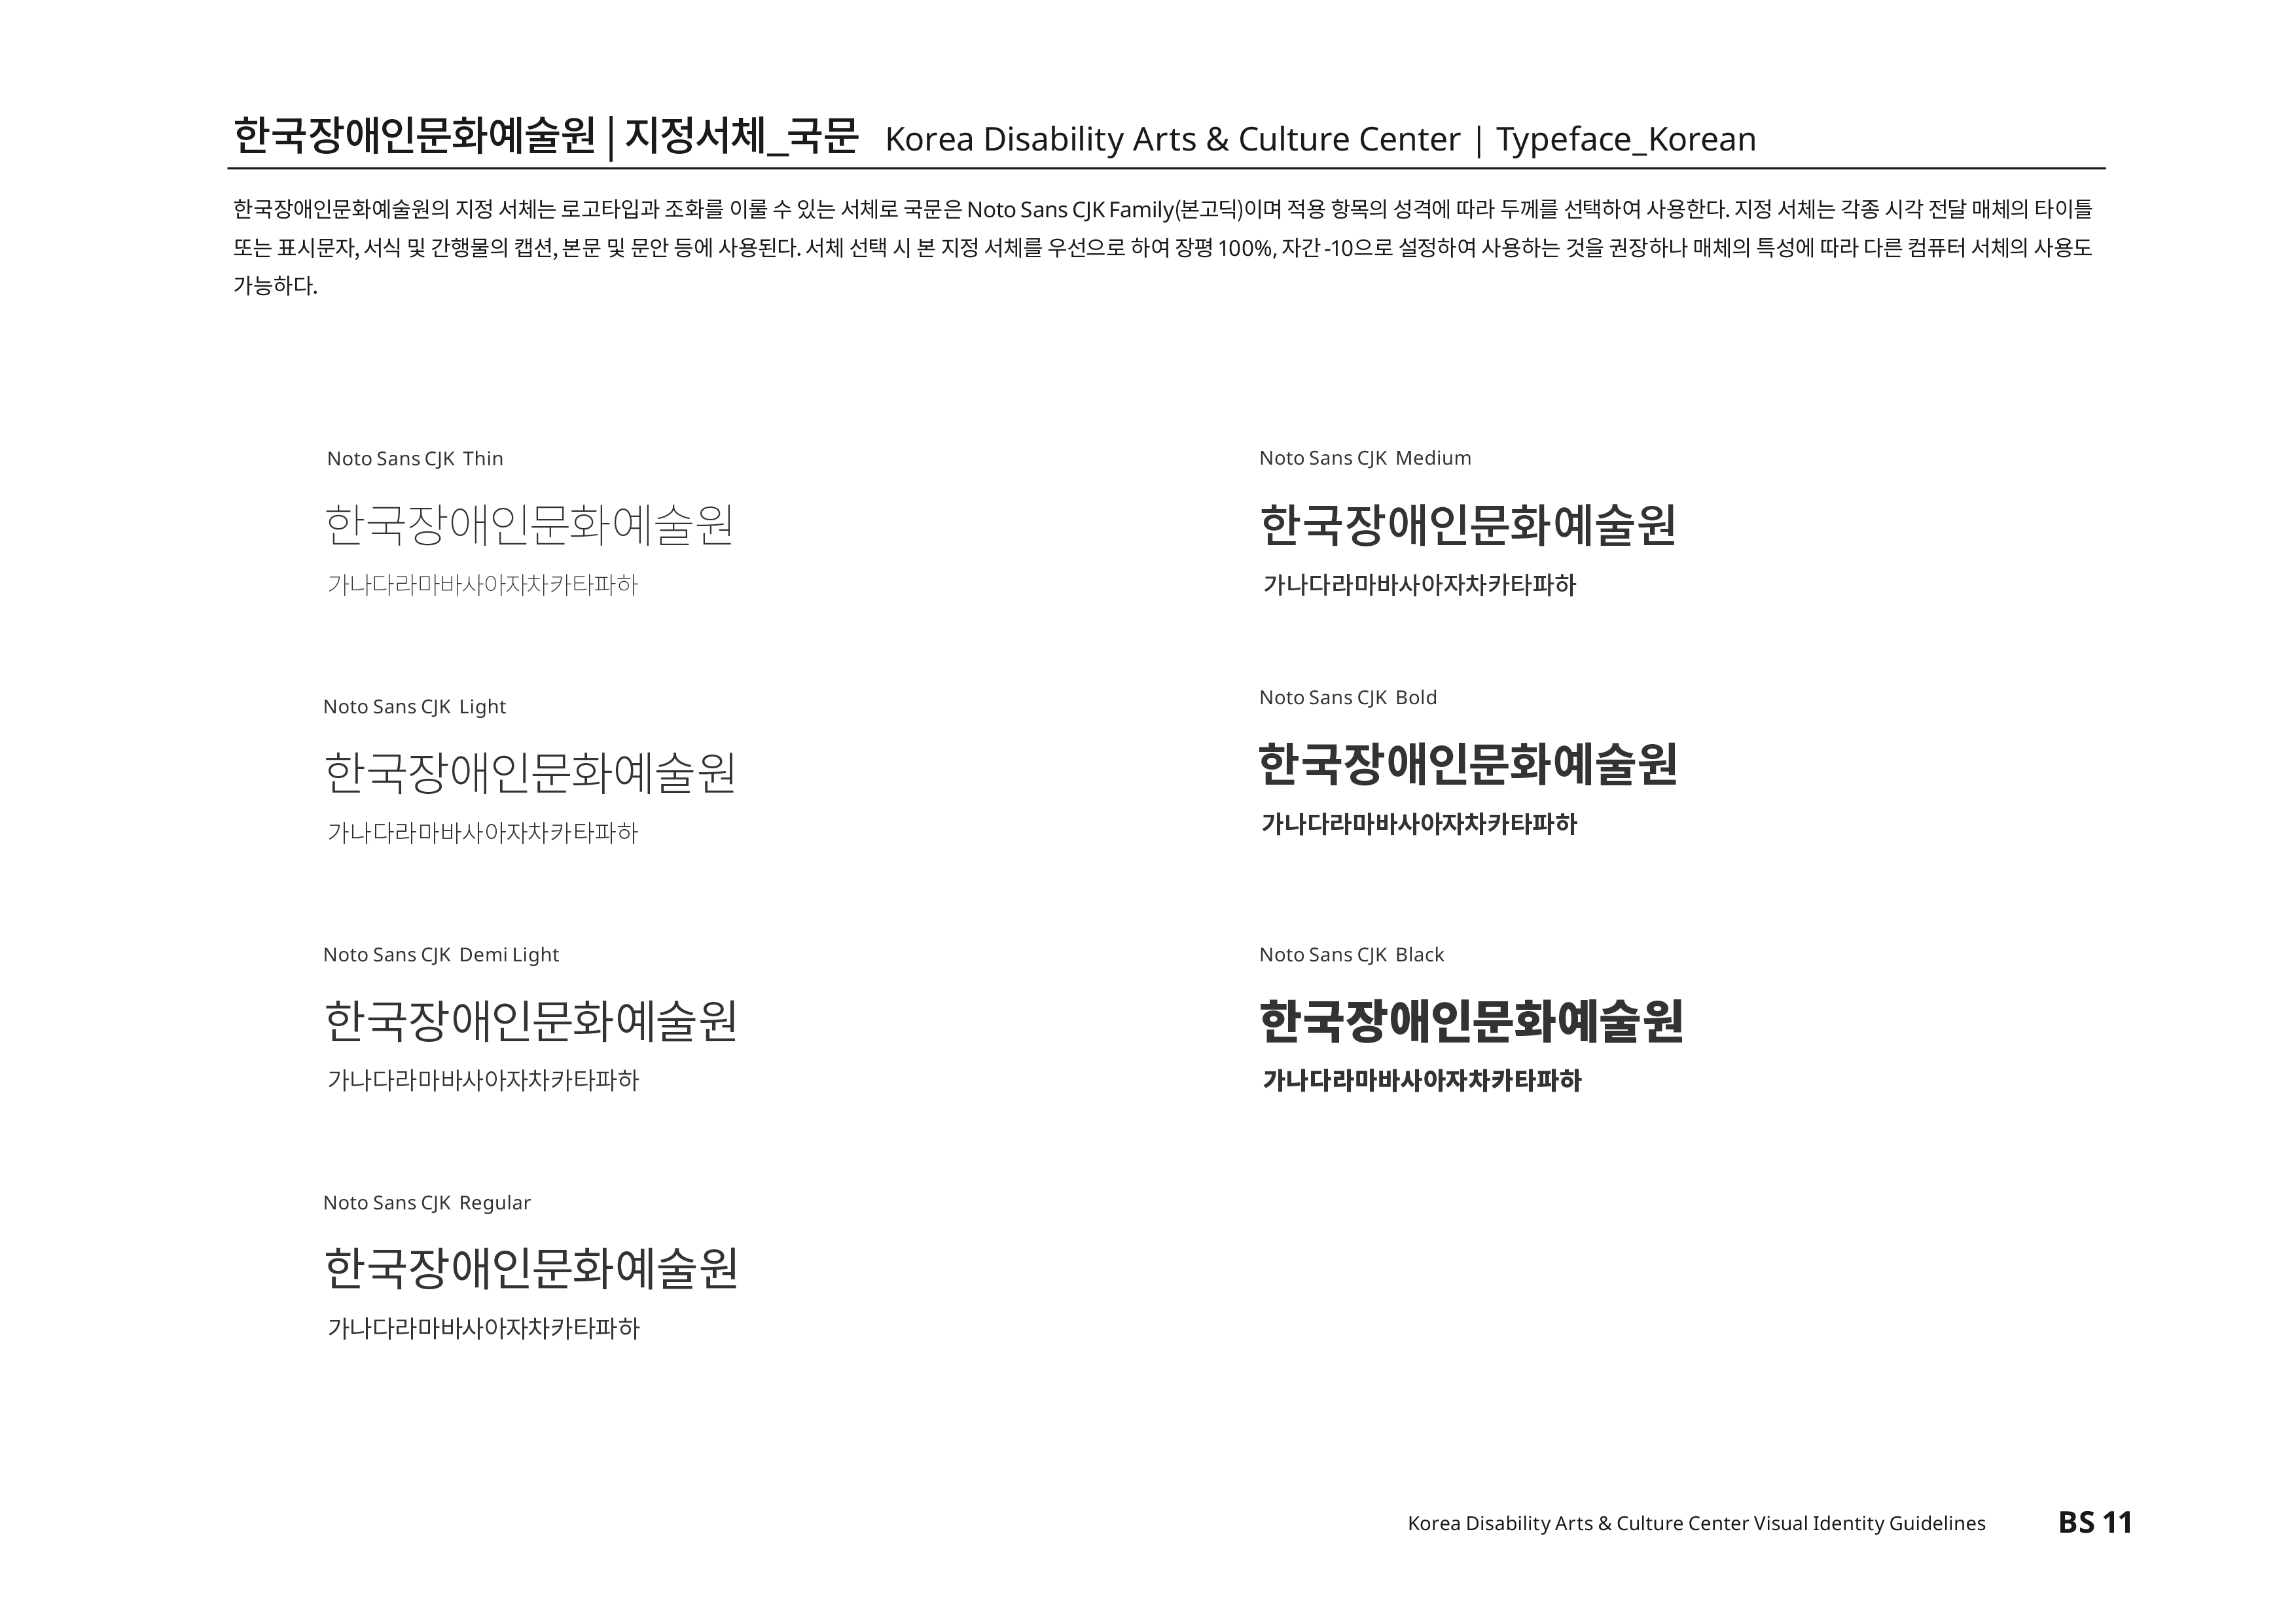 한국장애인문화예술원|지정서체_국문 Korea Disability Atrs & Culture Center | Typeface_Korean 한국장애인문화예술원의 지정 서체는 로고타입과 조화를 이룰 수 있는 서체로 국문은 Noto Sans CJK Family(본고딕)이며 적용 항목의 성격에 따라 두께를 선택하여 사용한다. 지정 서체는 각종 시각 전달 매체의 타이틀 또는 표시문자,서식 및 간행물의 캡션,본문 및 문안 등에 사용된다.서체 선택 시 본 지정 서체를 우선으로 하며 장평100%,자간-10으로 설정하여 사용하는 것을 권장하나 매체의 특성에 따라 다른 컴퓨터 서체의 사용도 가능하다.